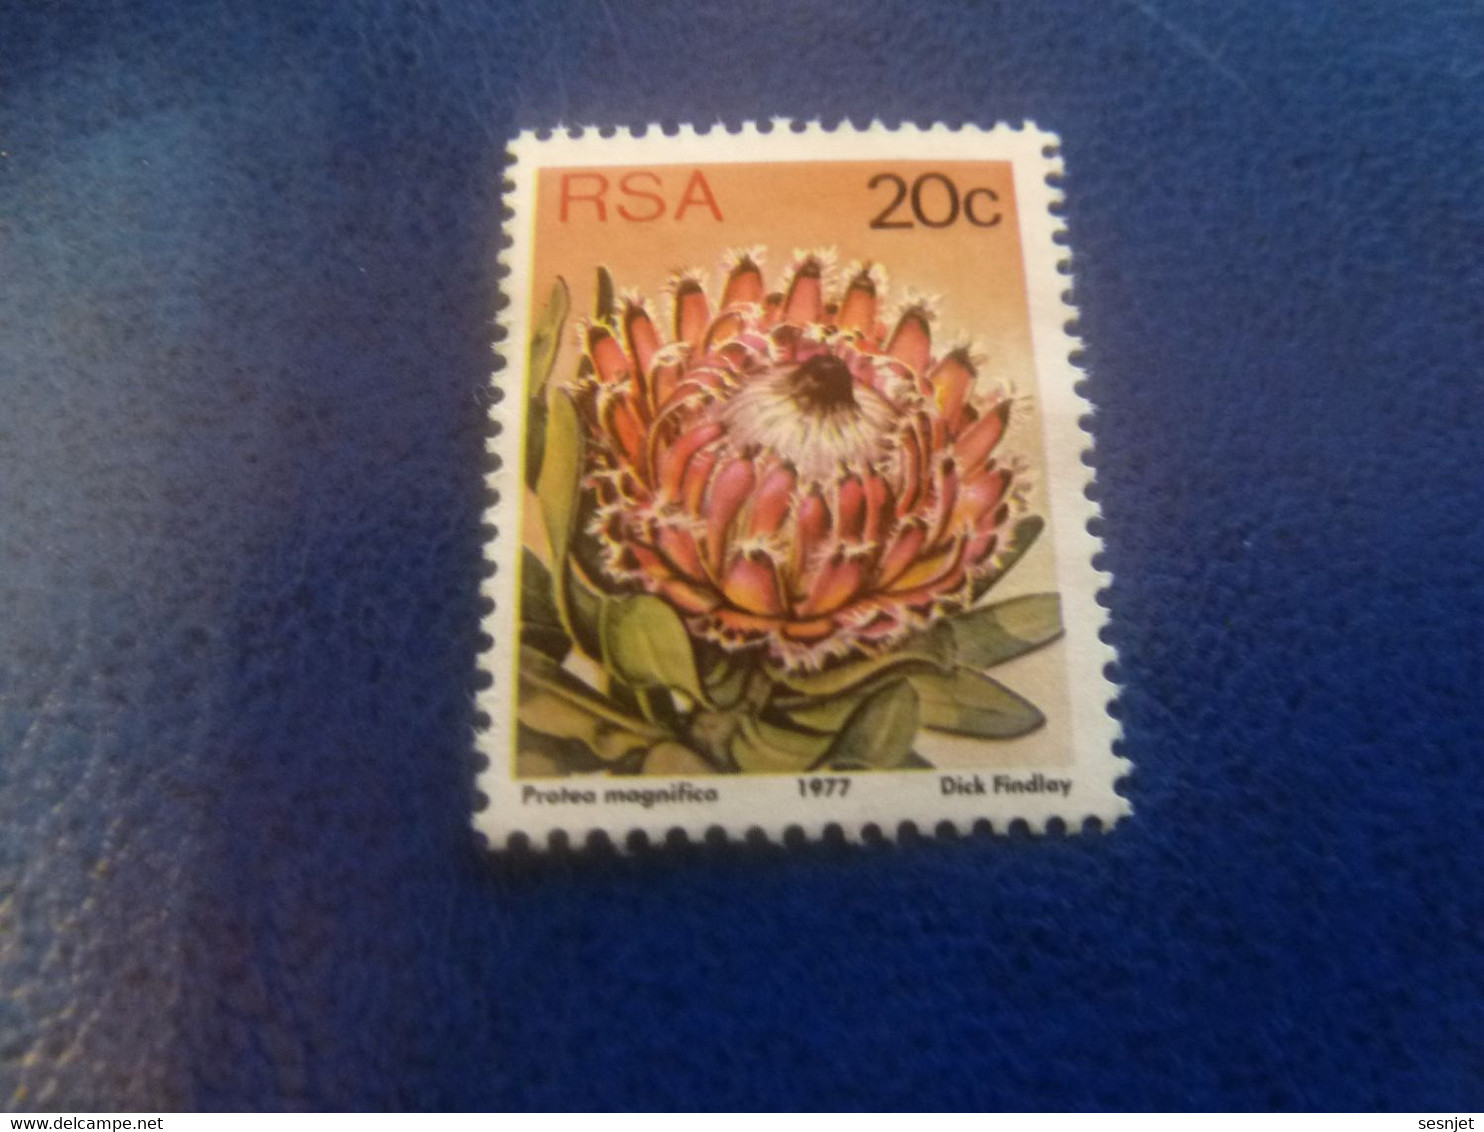 Rsa - Protea Punctata - Dick Findlay - 20 C. - Multicolore - Non Oblitéré - Année 1977 - - Gebruikt